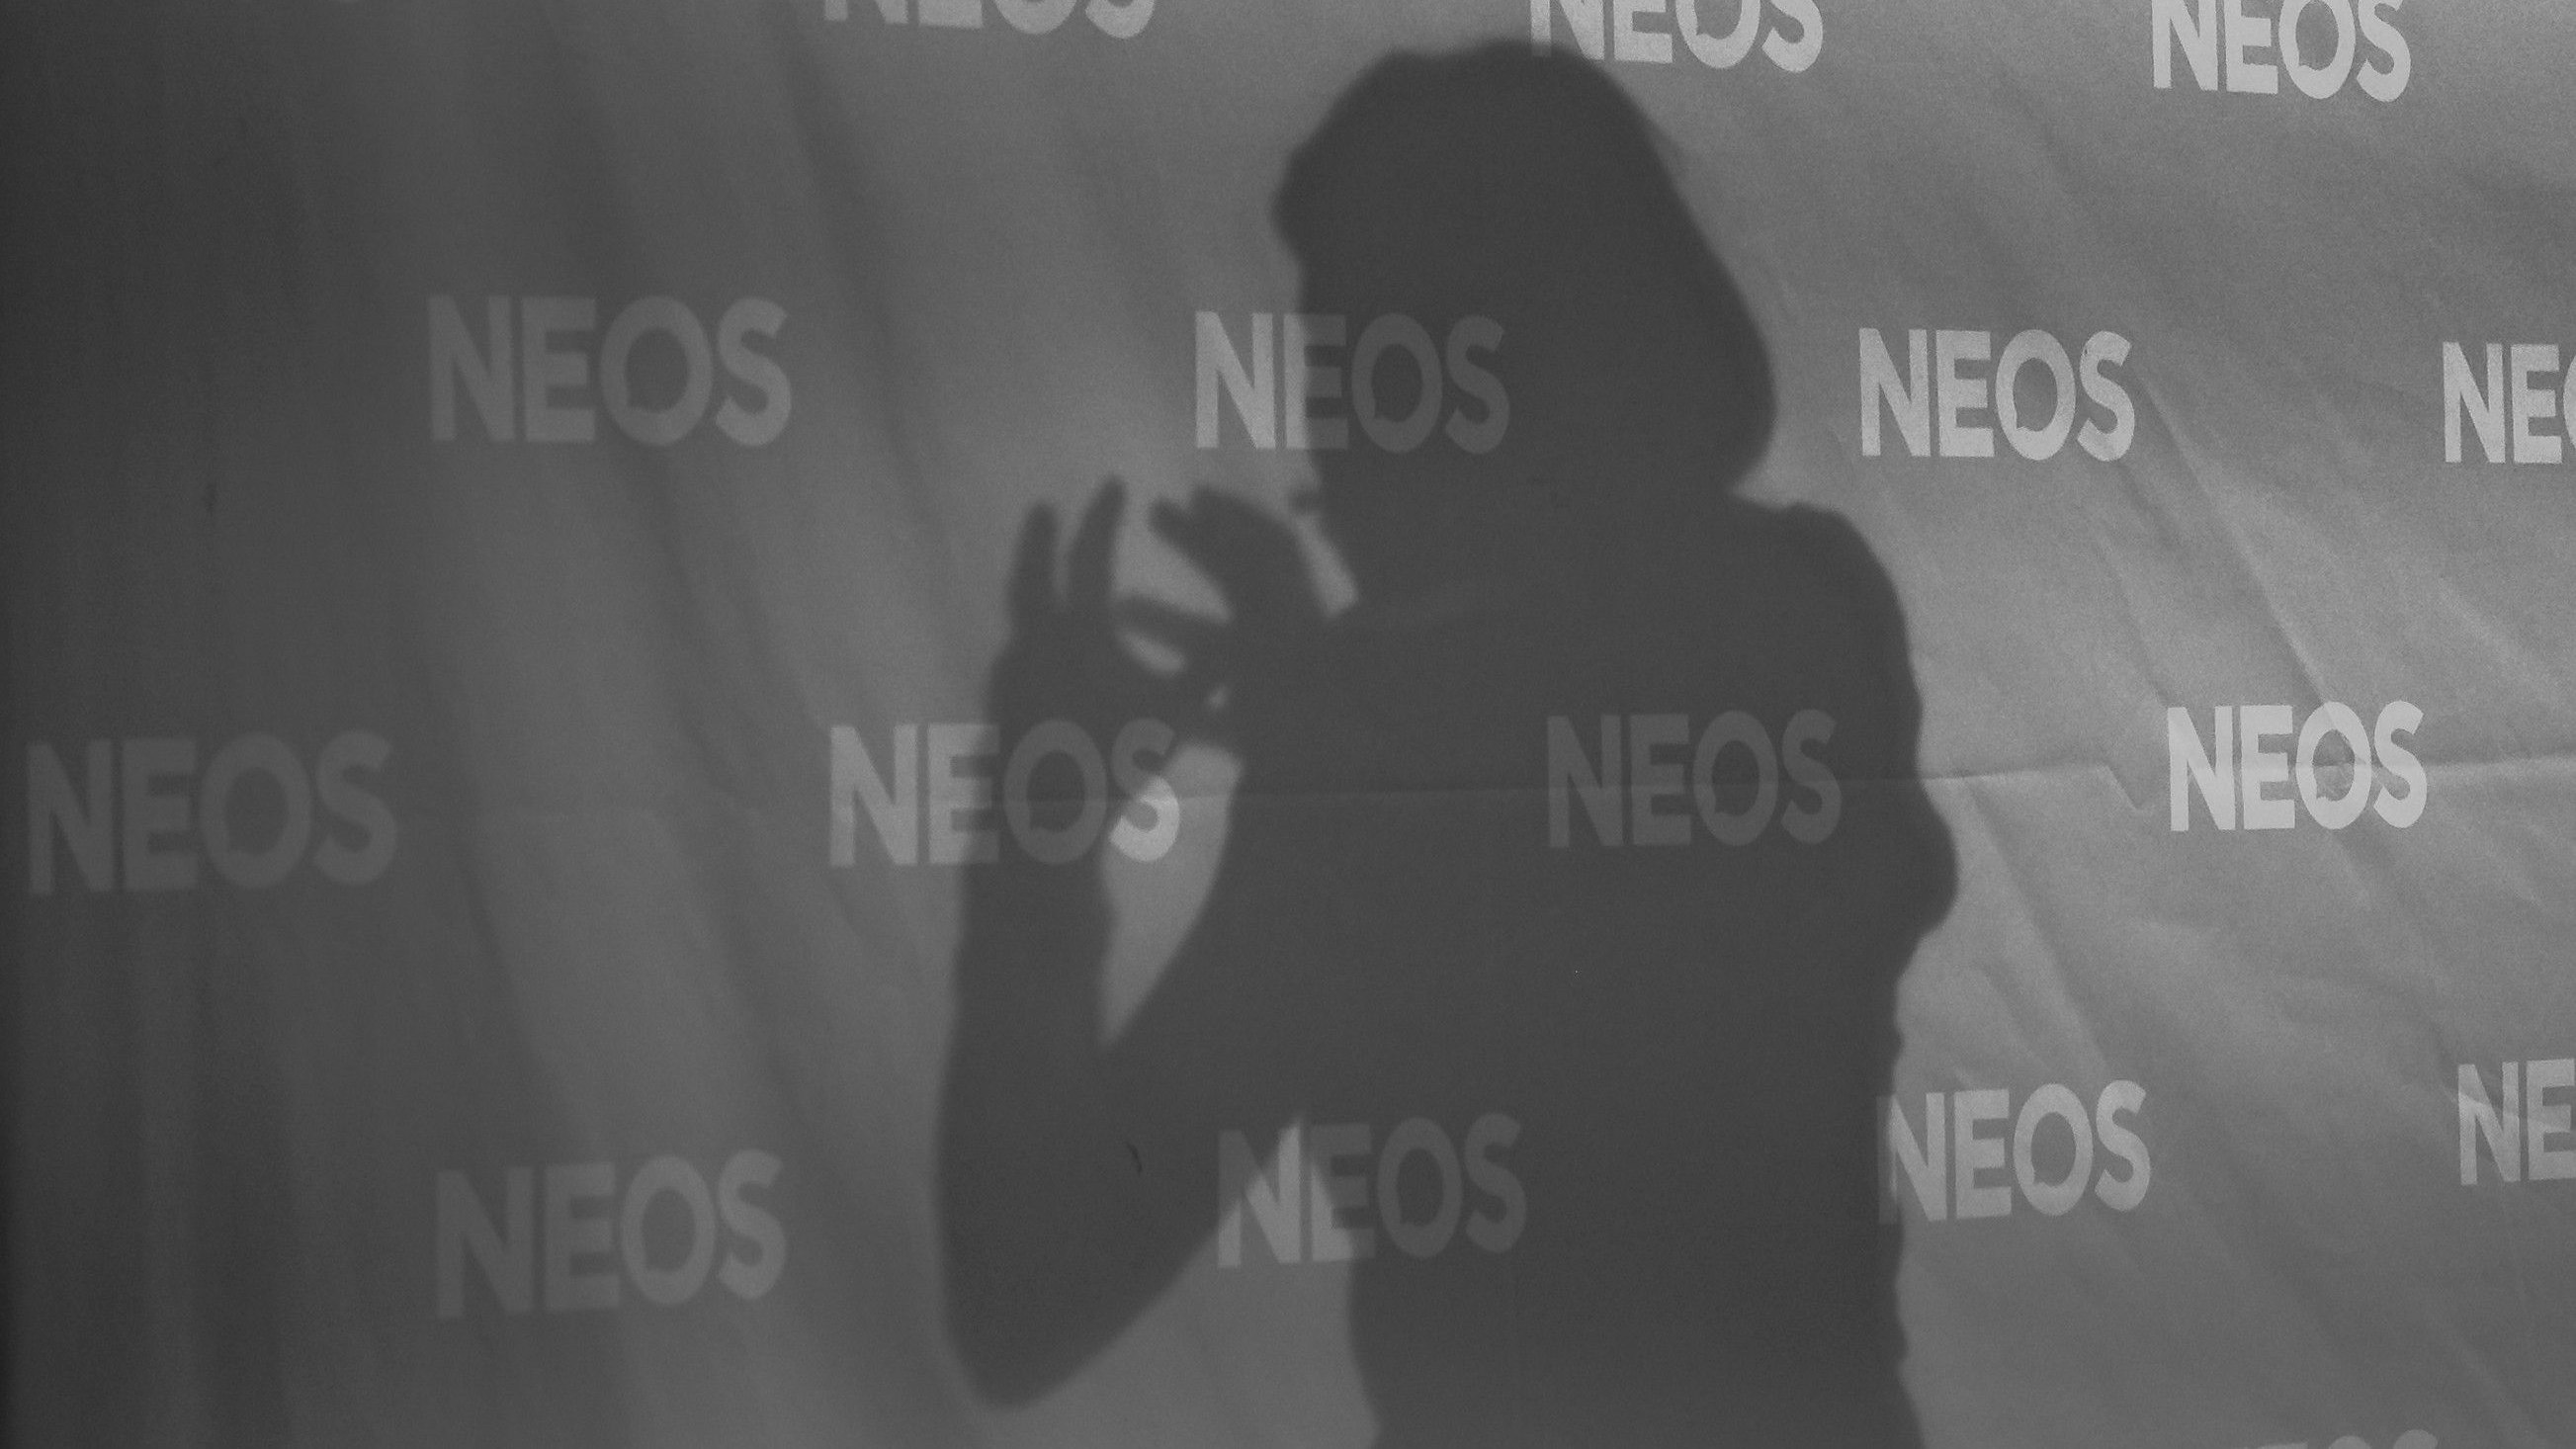 Neos-Parteivorsitzende Beate Meinl-Reisinger während der Präsentation ihres Buchs "Wendepunkt" in der "Wolke 19" im Ares Tower in Wien